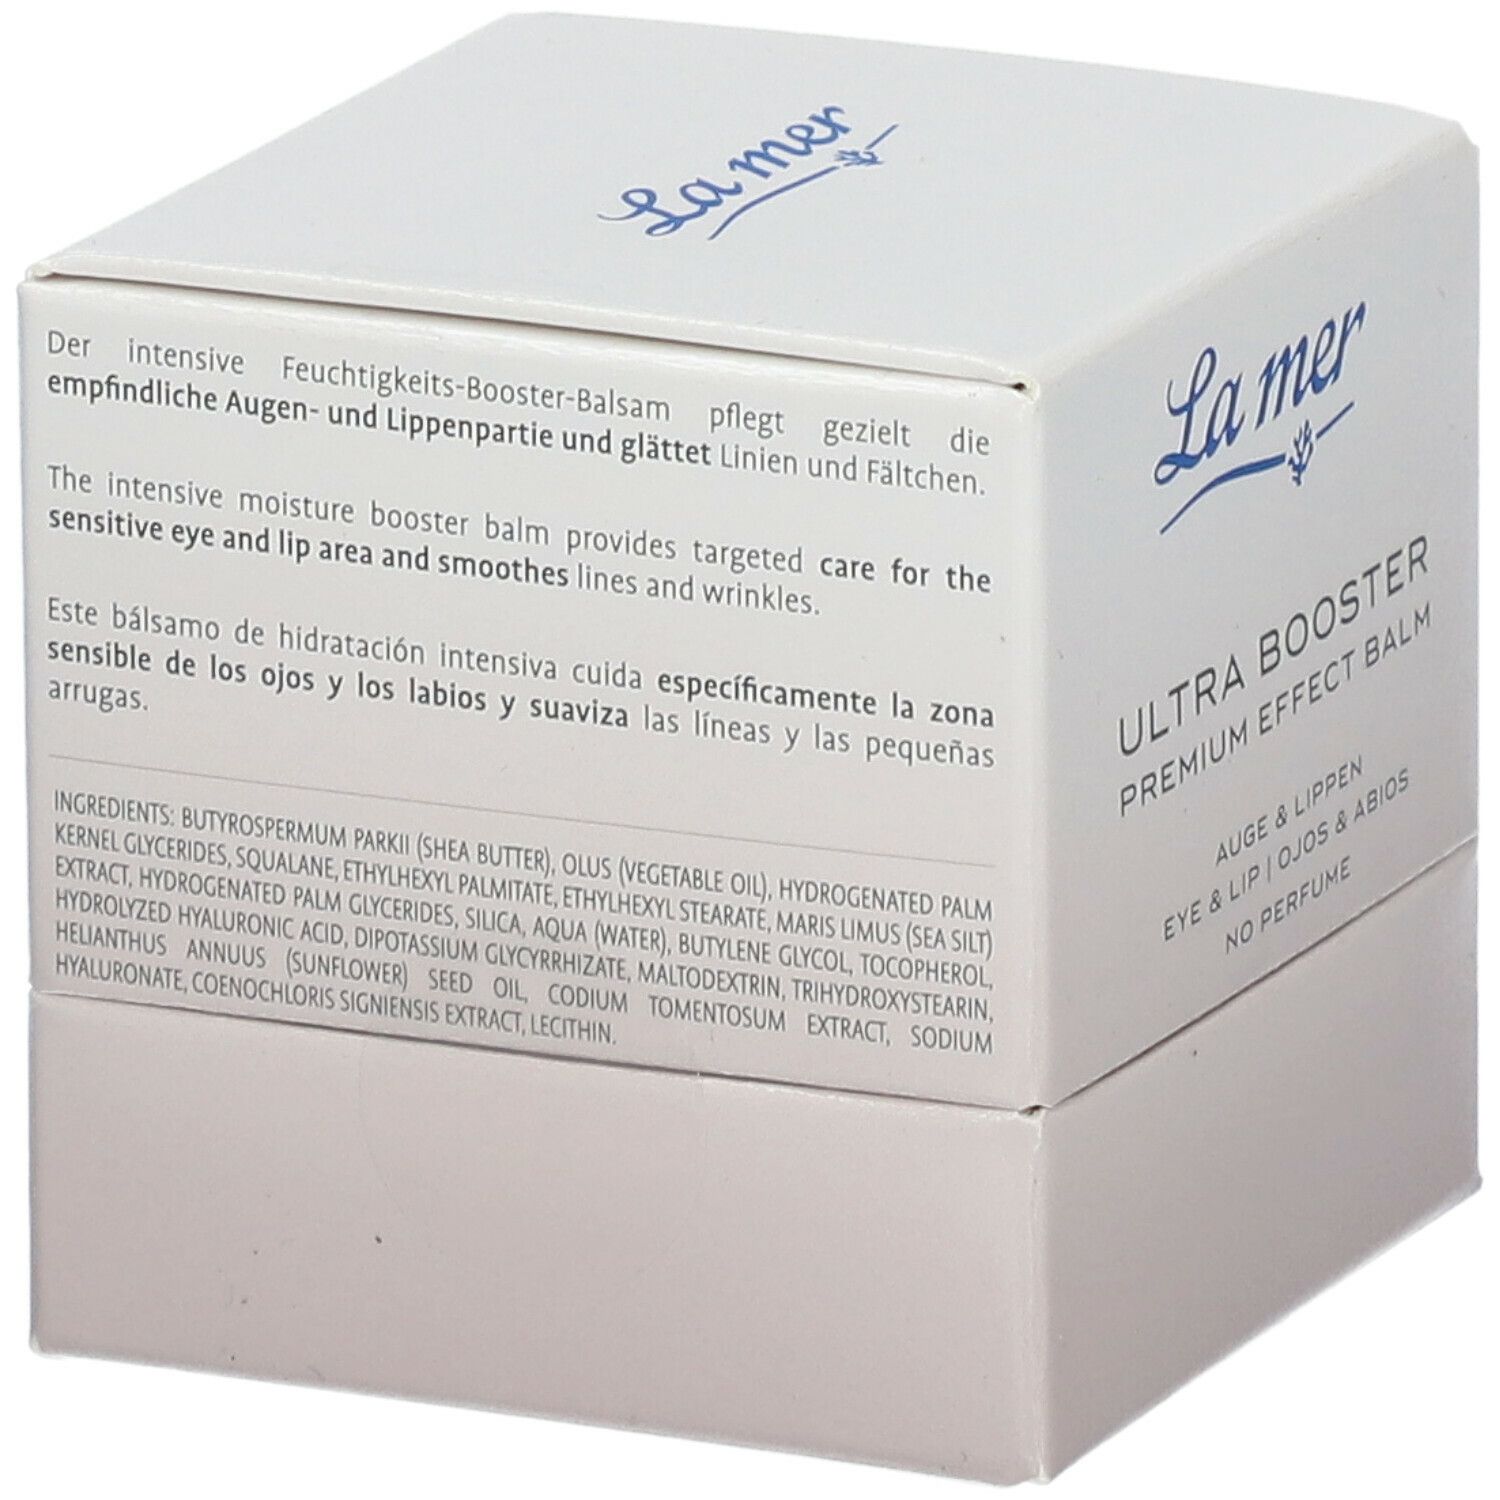 La mer Ultra Booster Premium Effect Balm Augen & Lippen